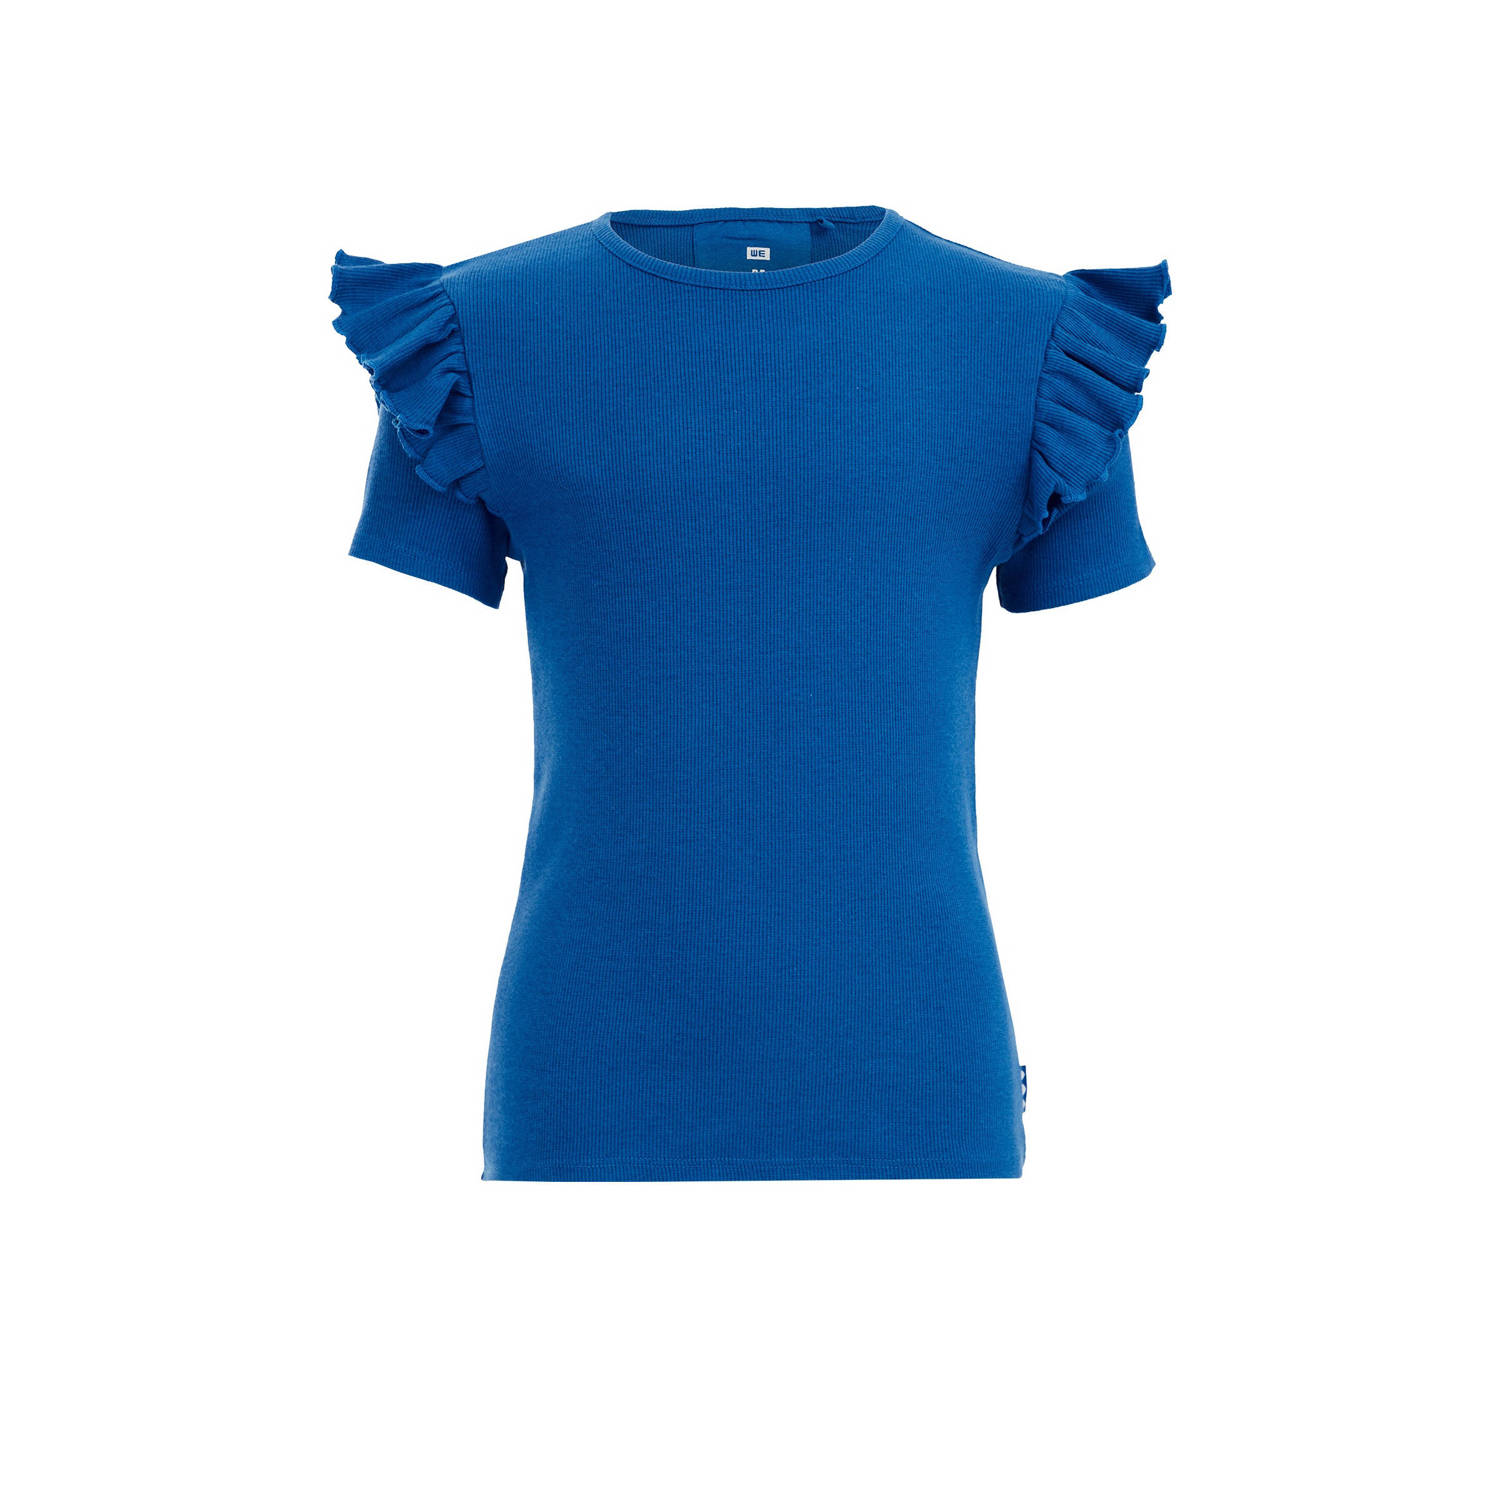 WE Fashion T-shirt blauw Meisjes Stretchkatoen Ronde hals Effen 110 116